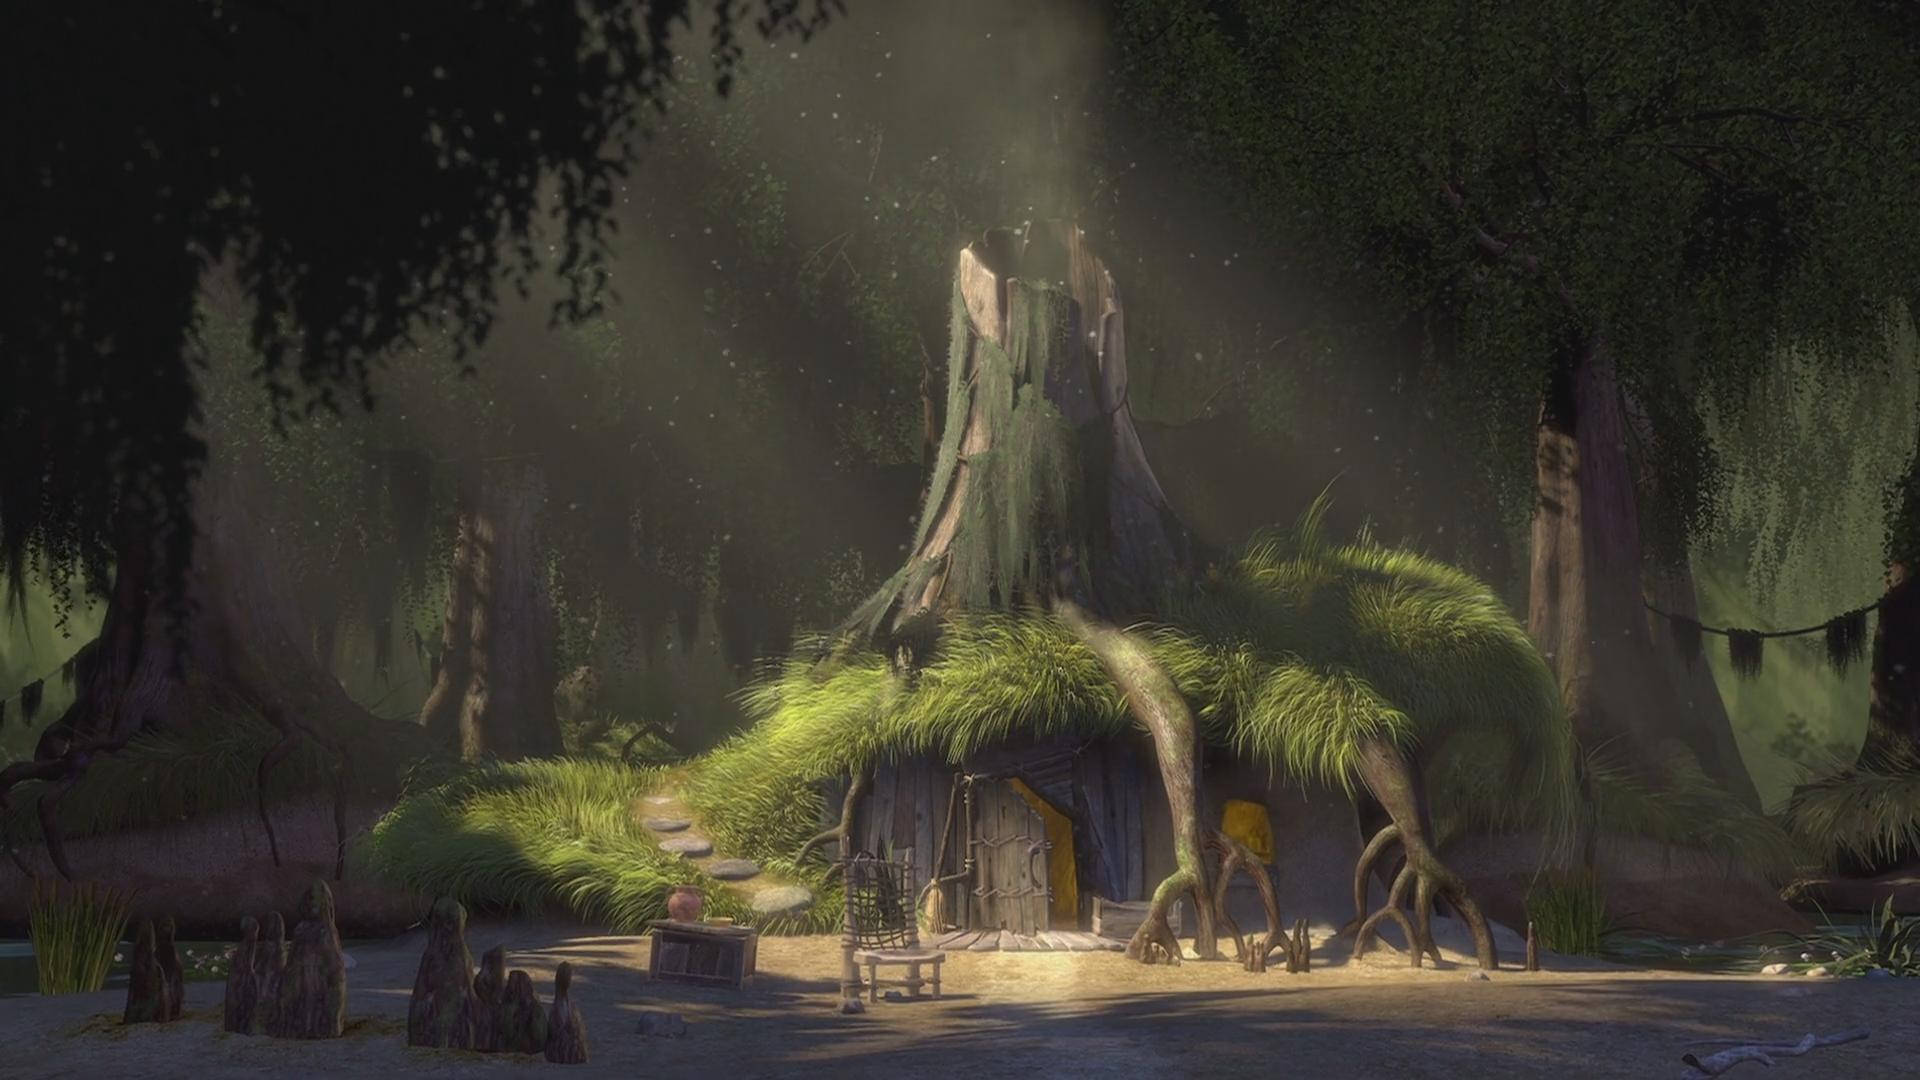 Shrek's Swamp House Background